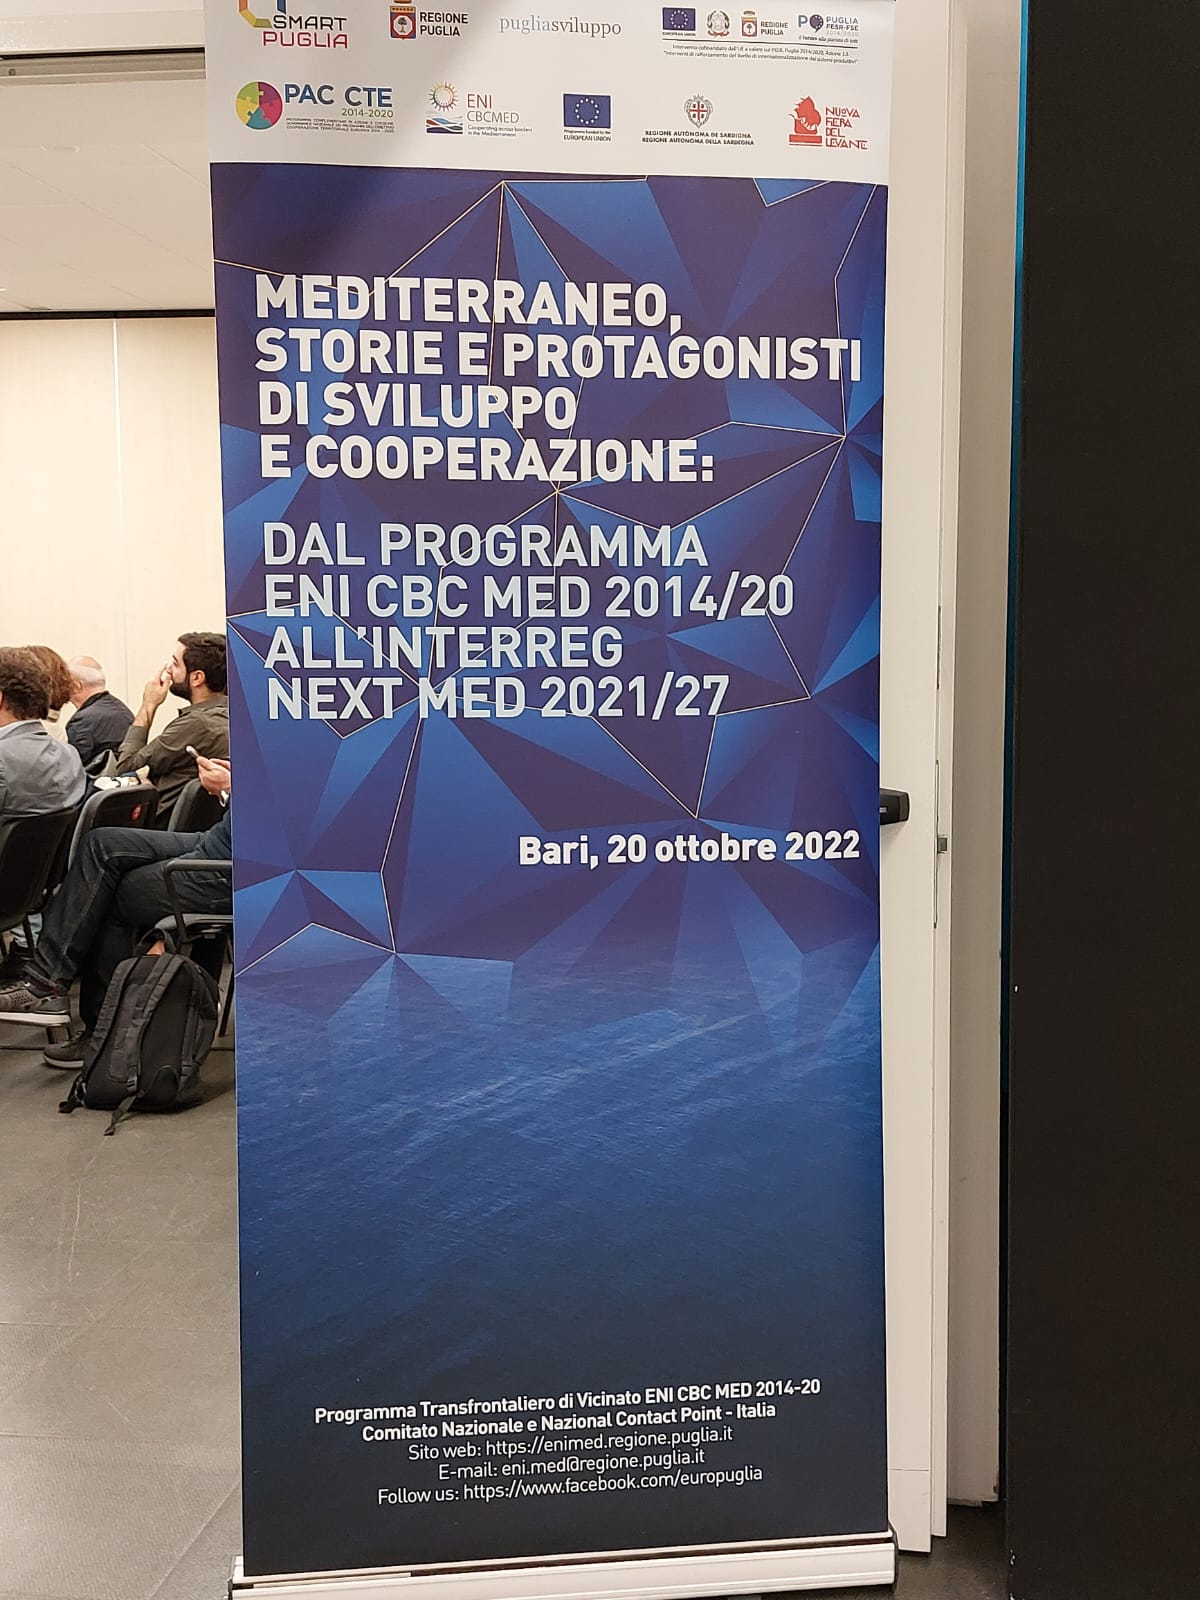 Galleria Puglia in prima linea per la CTE 2021/27: opportunità di sviluppo locale con Interreg NEXT MED - Diapositiva 3 di 3